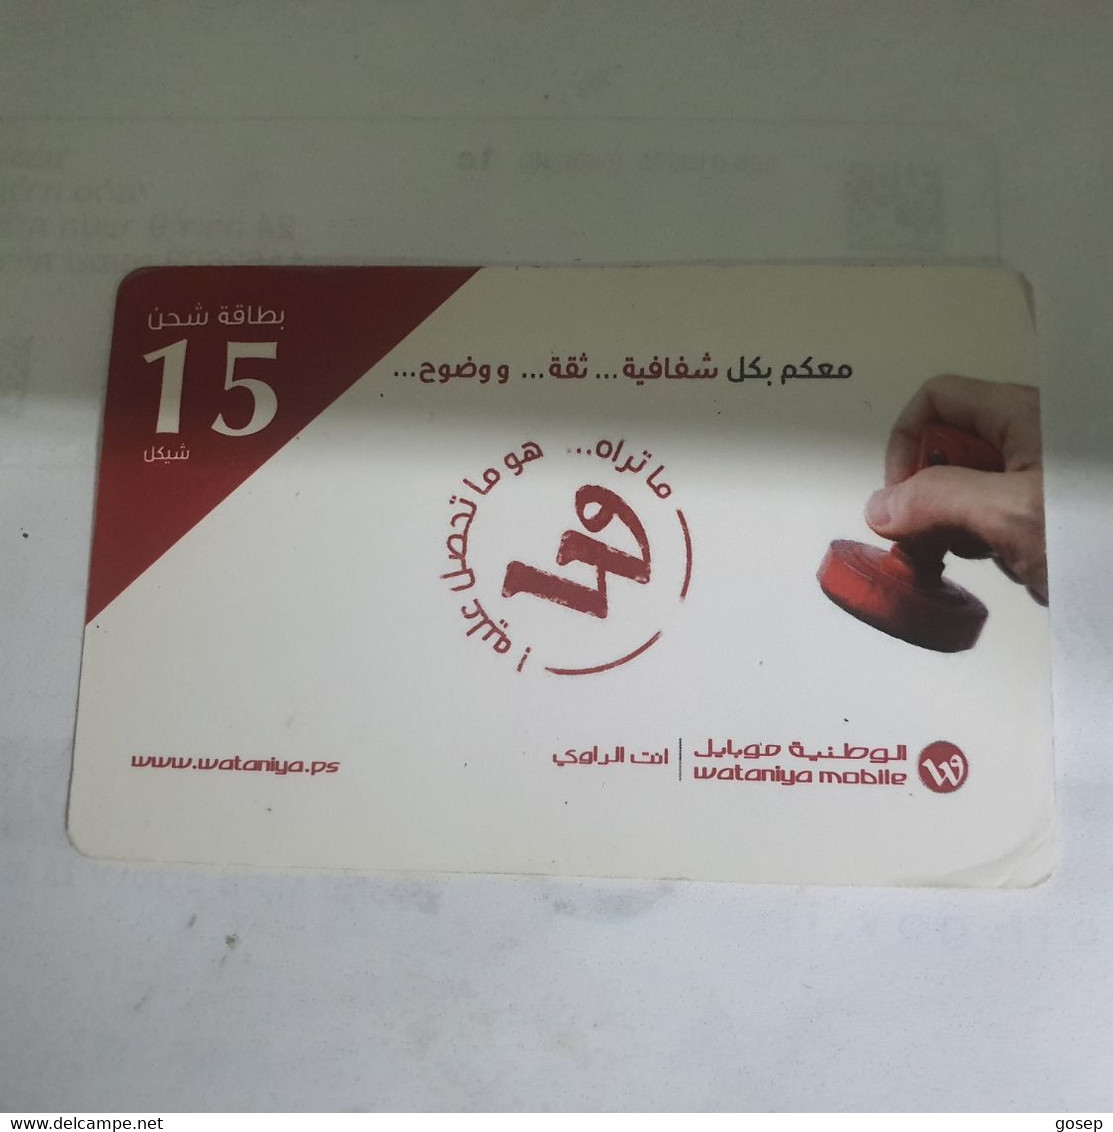 PALESTINE-(PS-WAT-REF-0005C)-Mobile 15-(380)-(9811-2831-5205-3725)-(1/5/2016)used Card+1prepiad Free - Palestine